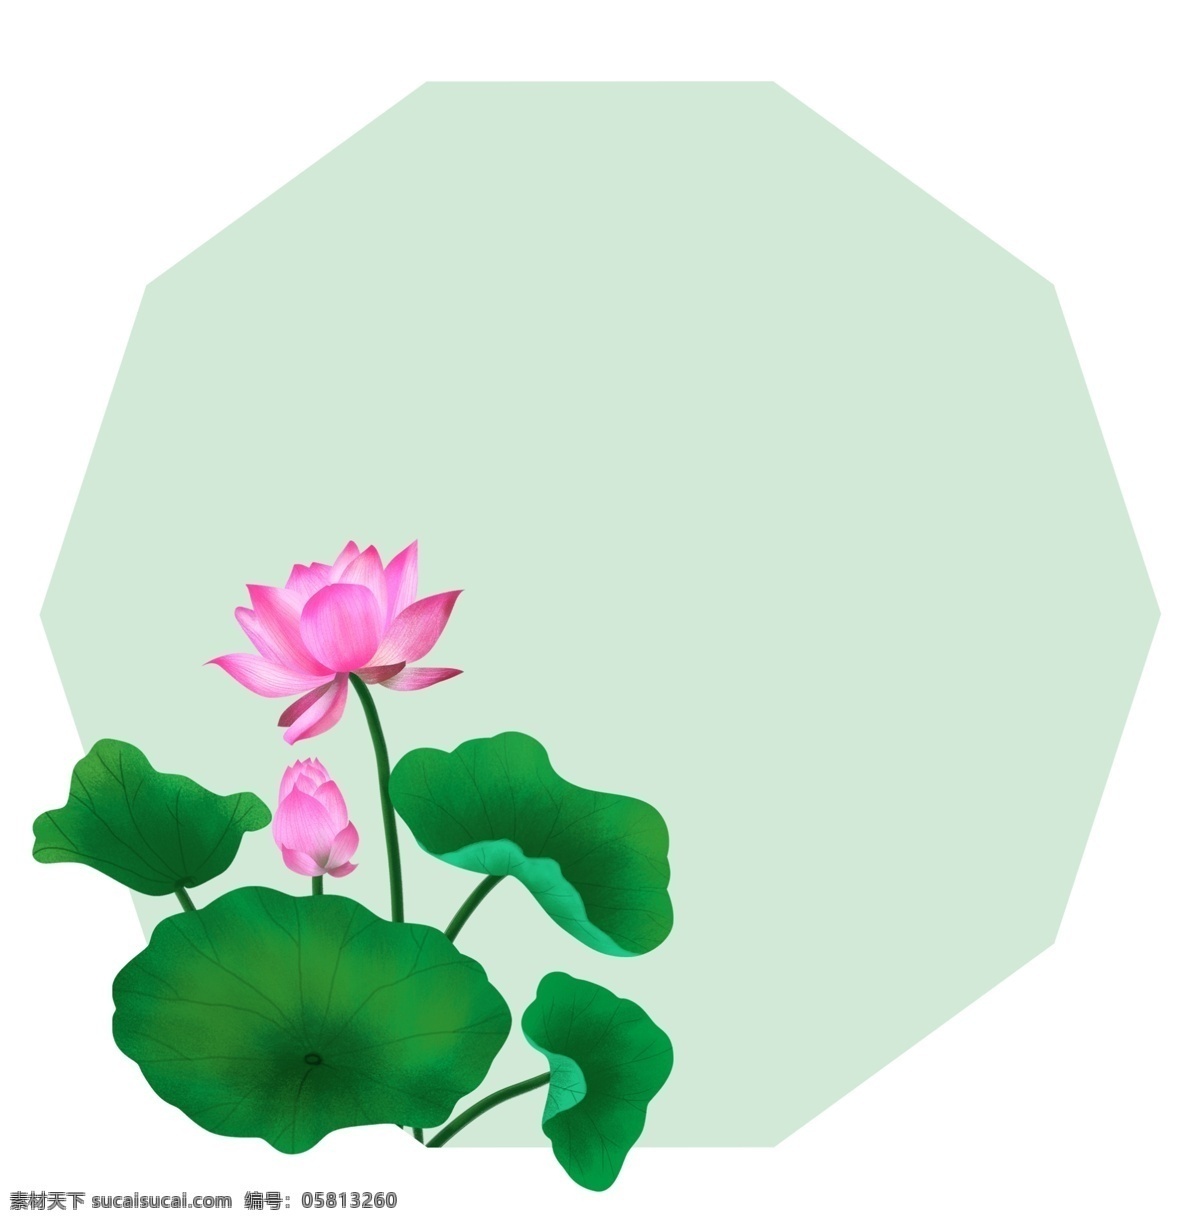 多边形 荷花 主题 边框 几何 主题边框 绿色 荷叶 花朵 植物边框 手绘荷花 荷花插画 叶子 立夏 夏天